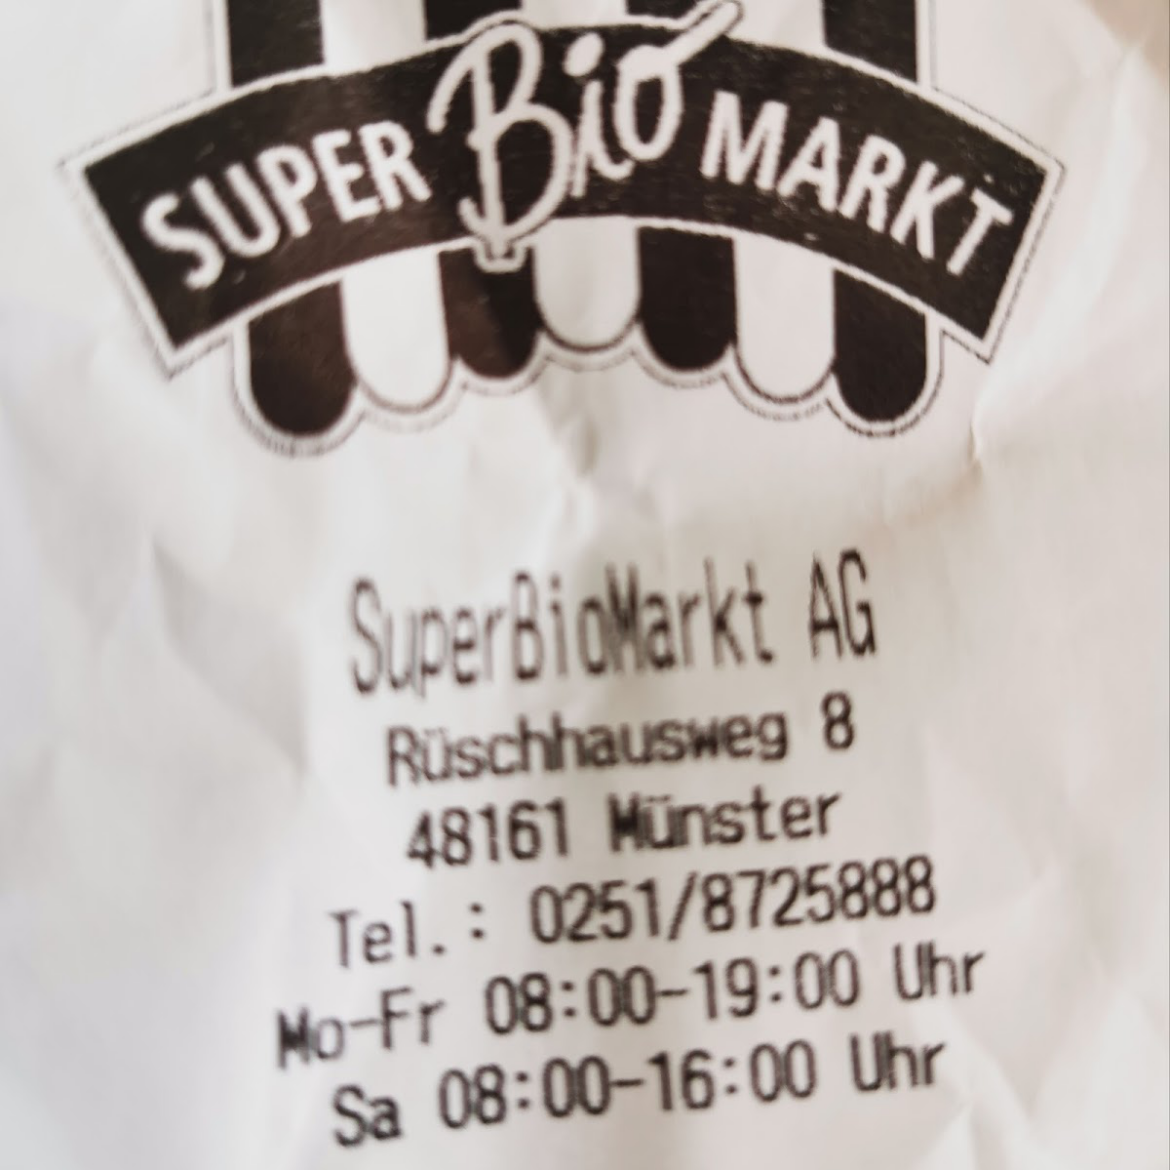  SuperBioMarkt